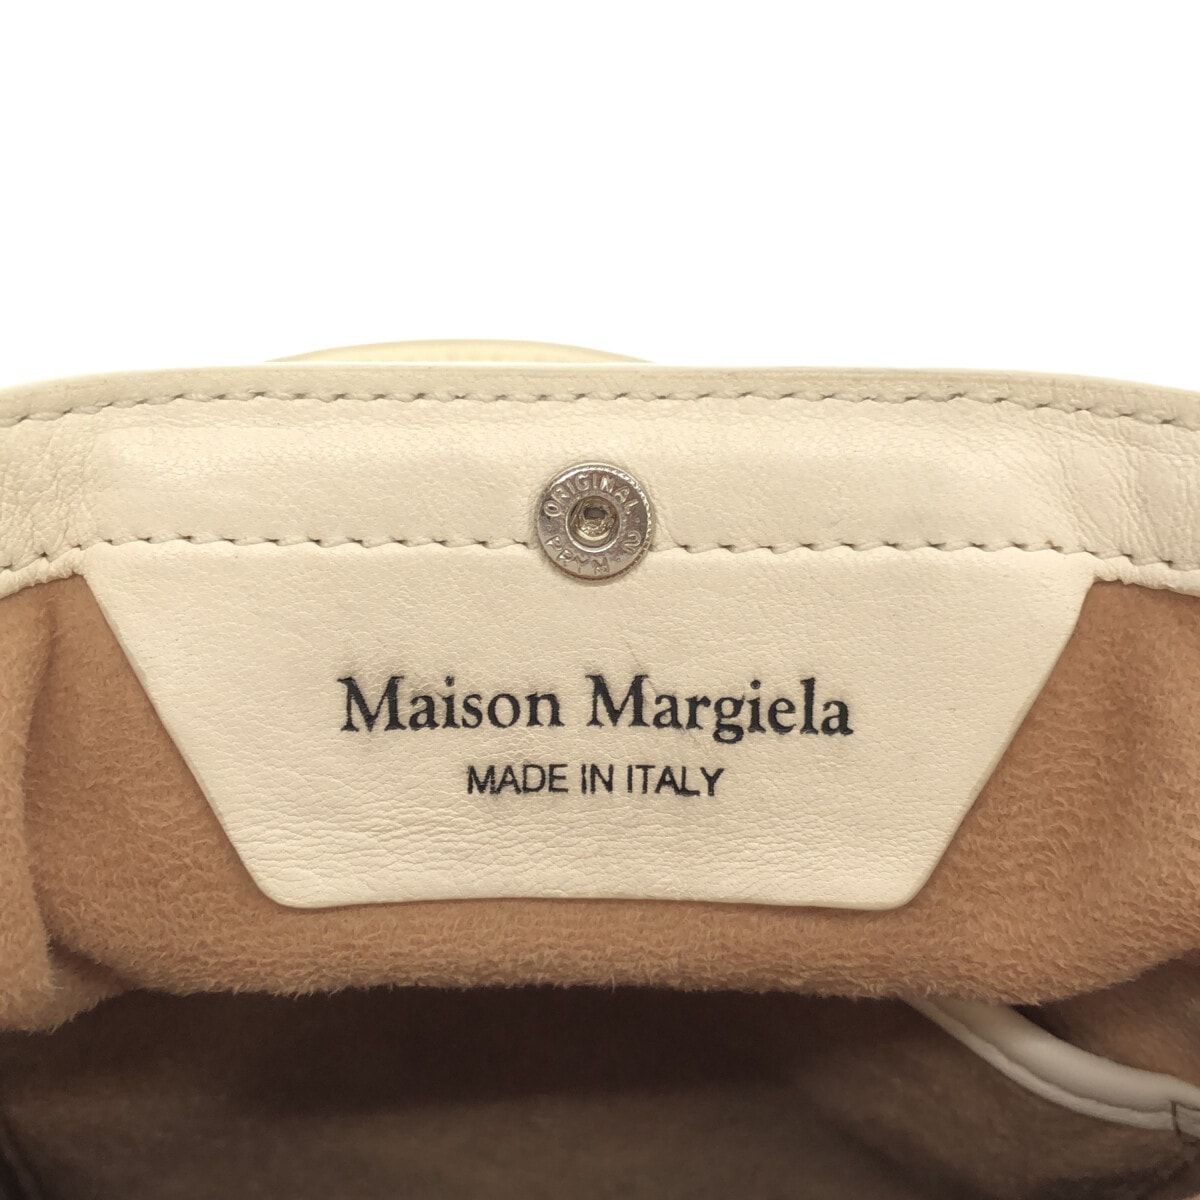 Maison Margiela(メゾンマルジェラ) ハンドバッグ 5AC マイクロ S56WG0081 白 レザー - メルカリ